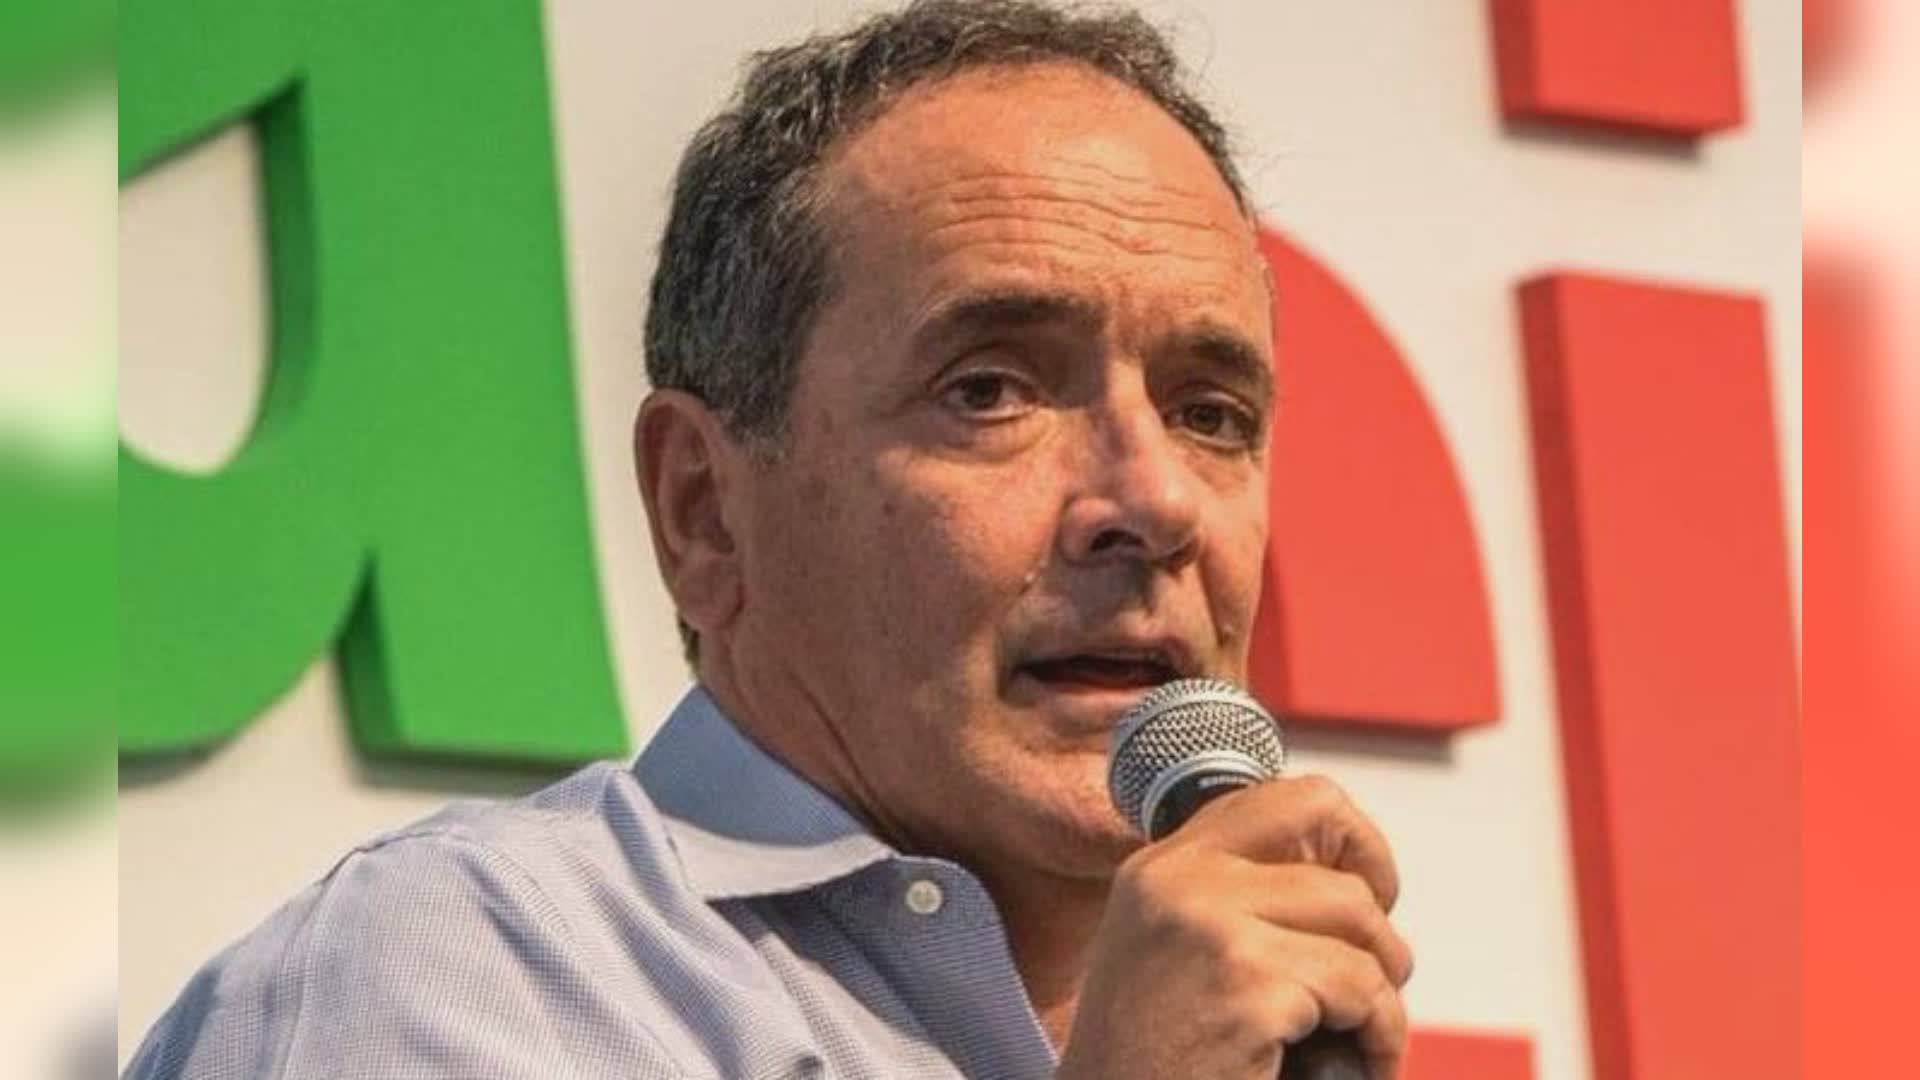 Caso Toti, Mirabelli (Pd): "Incredibile che presidente e altri non si dimettano"